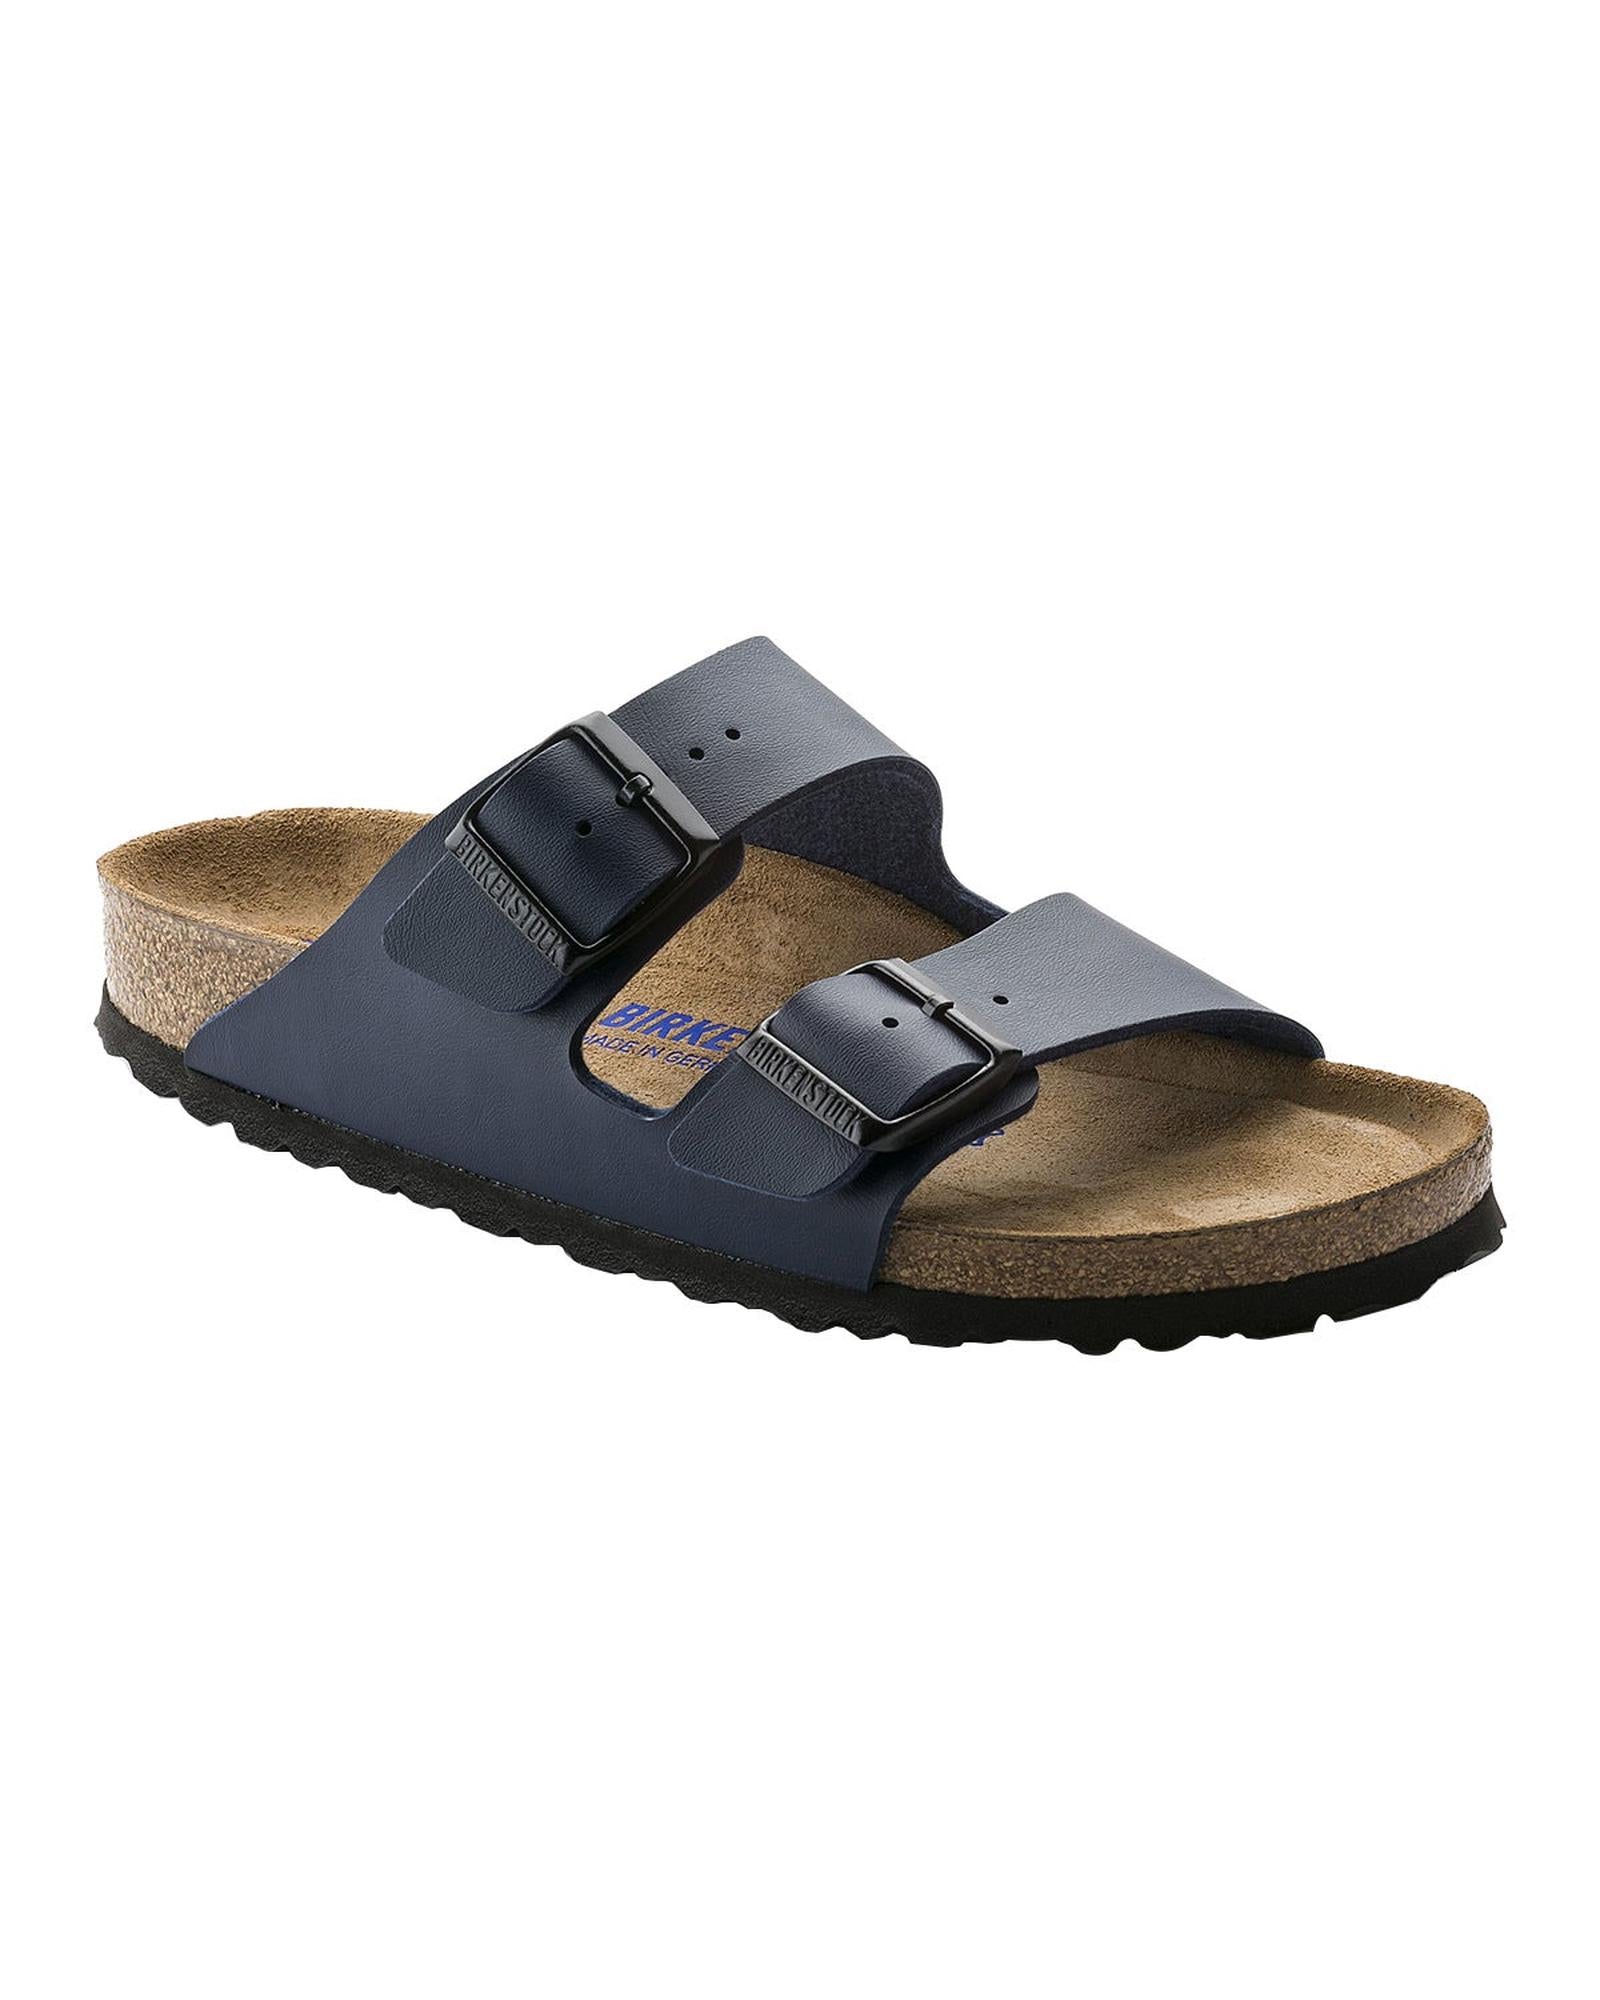 Comfortable Birko-Flor Sandals with Adjustable Straps in Blue - 44 EU